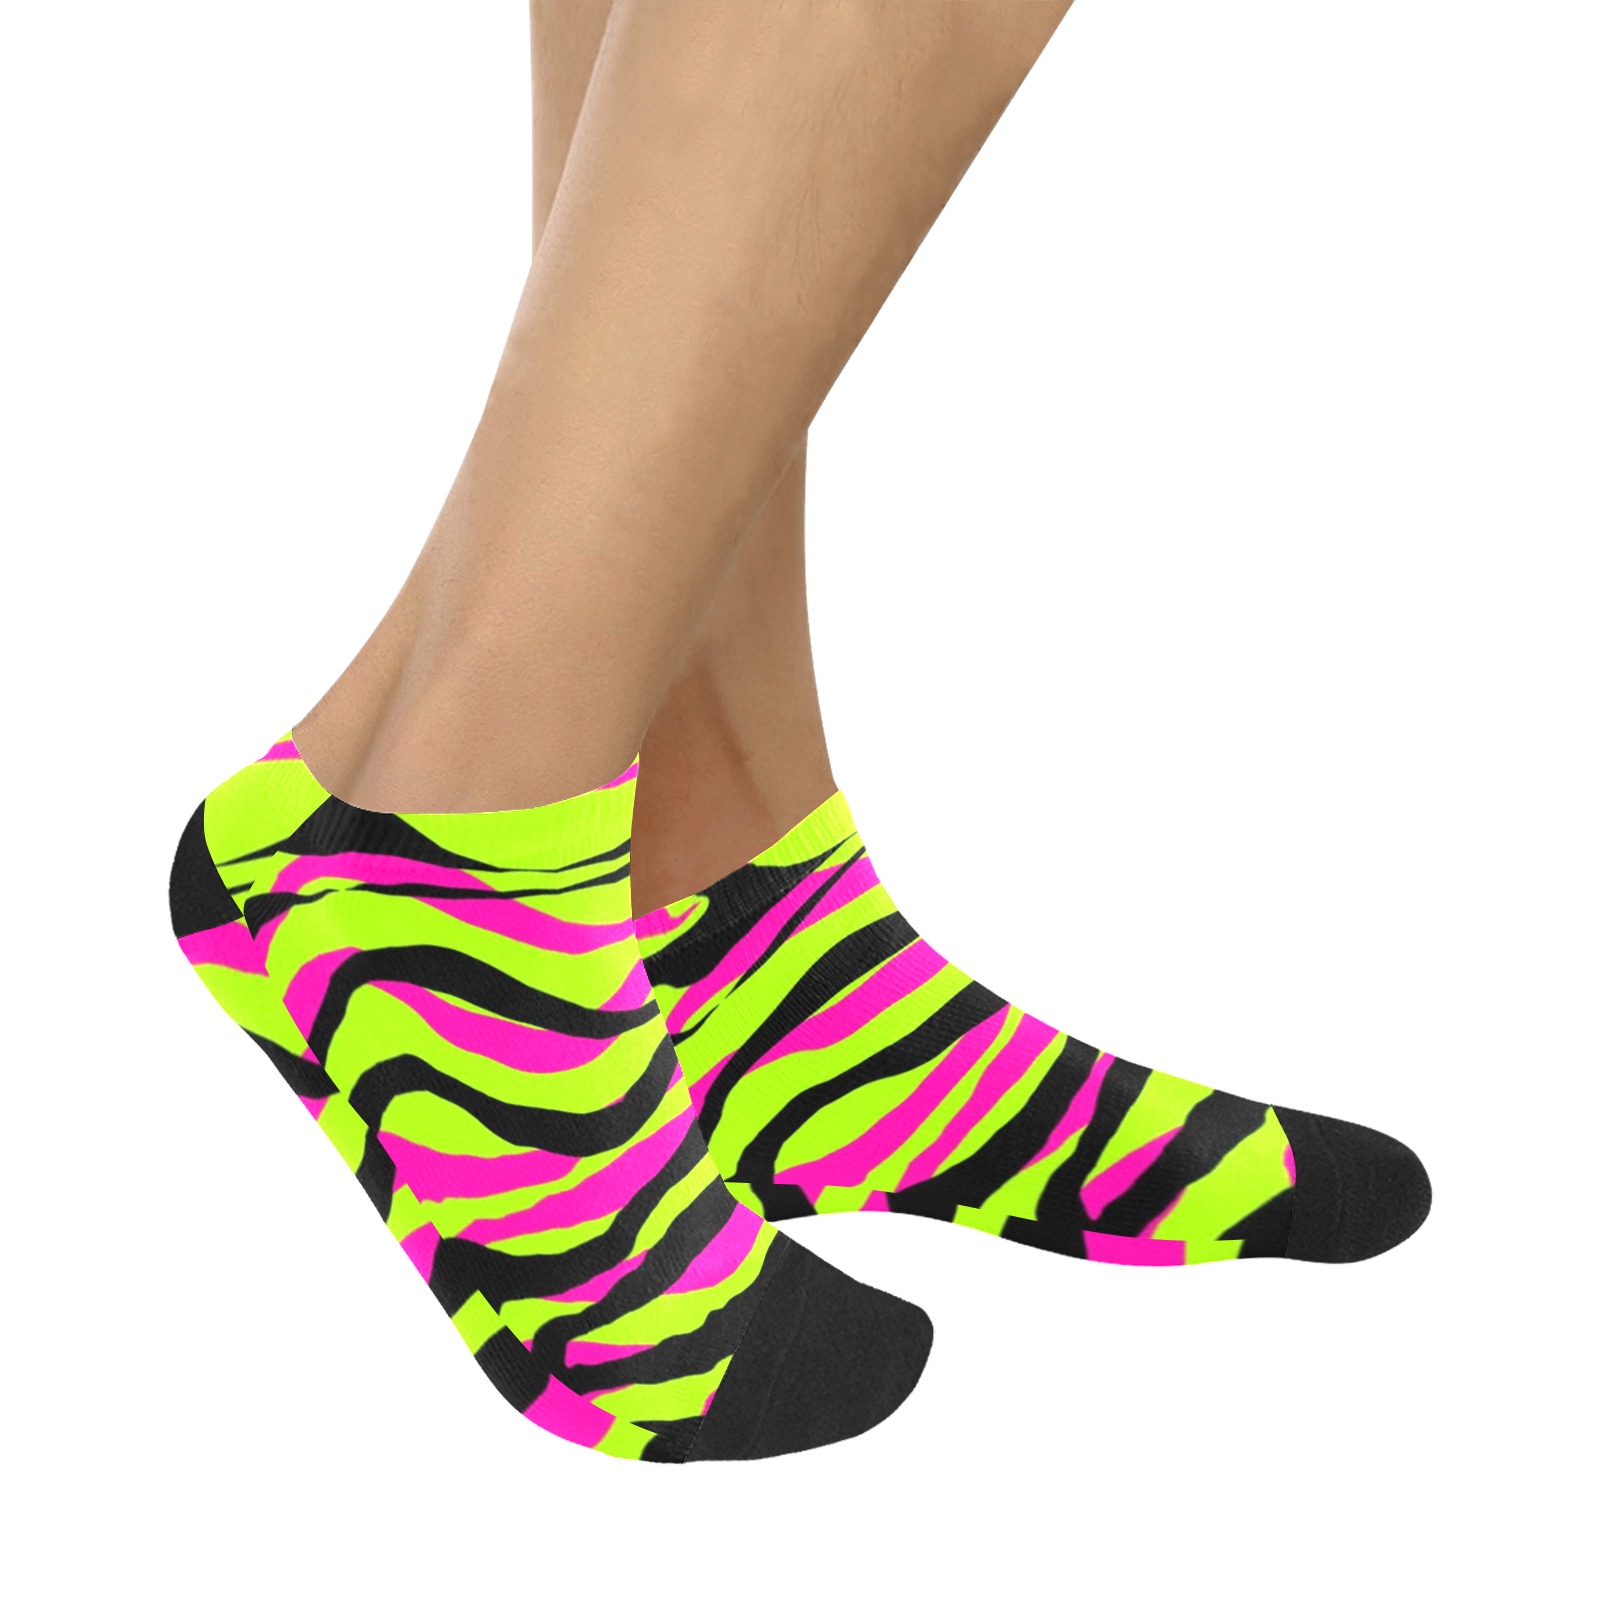 Pink, Neon Green & Black Tiger Stripe Socks Custom Socks Bright Socks Colorful Fun Socks Women's Ankle Socks